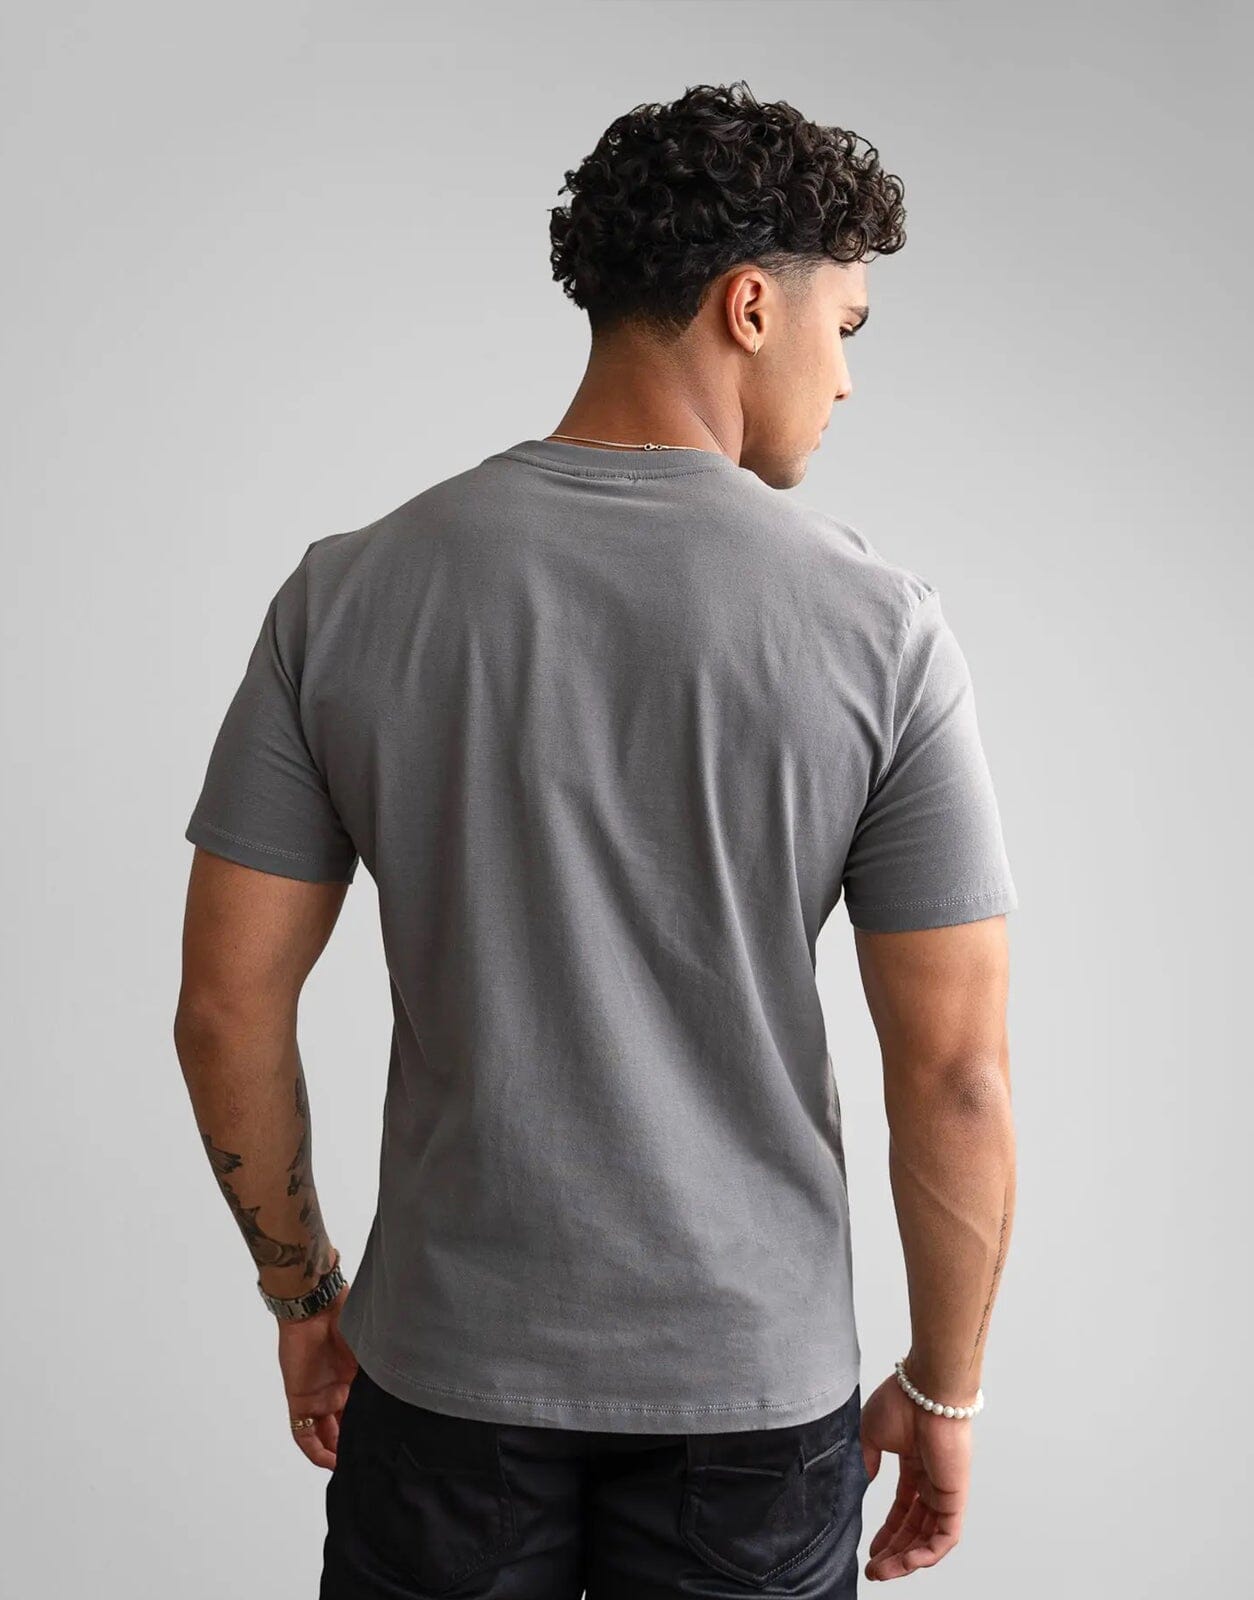 Fade Essential Grey T-Shirt - Subwear